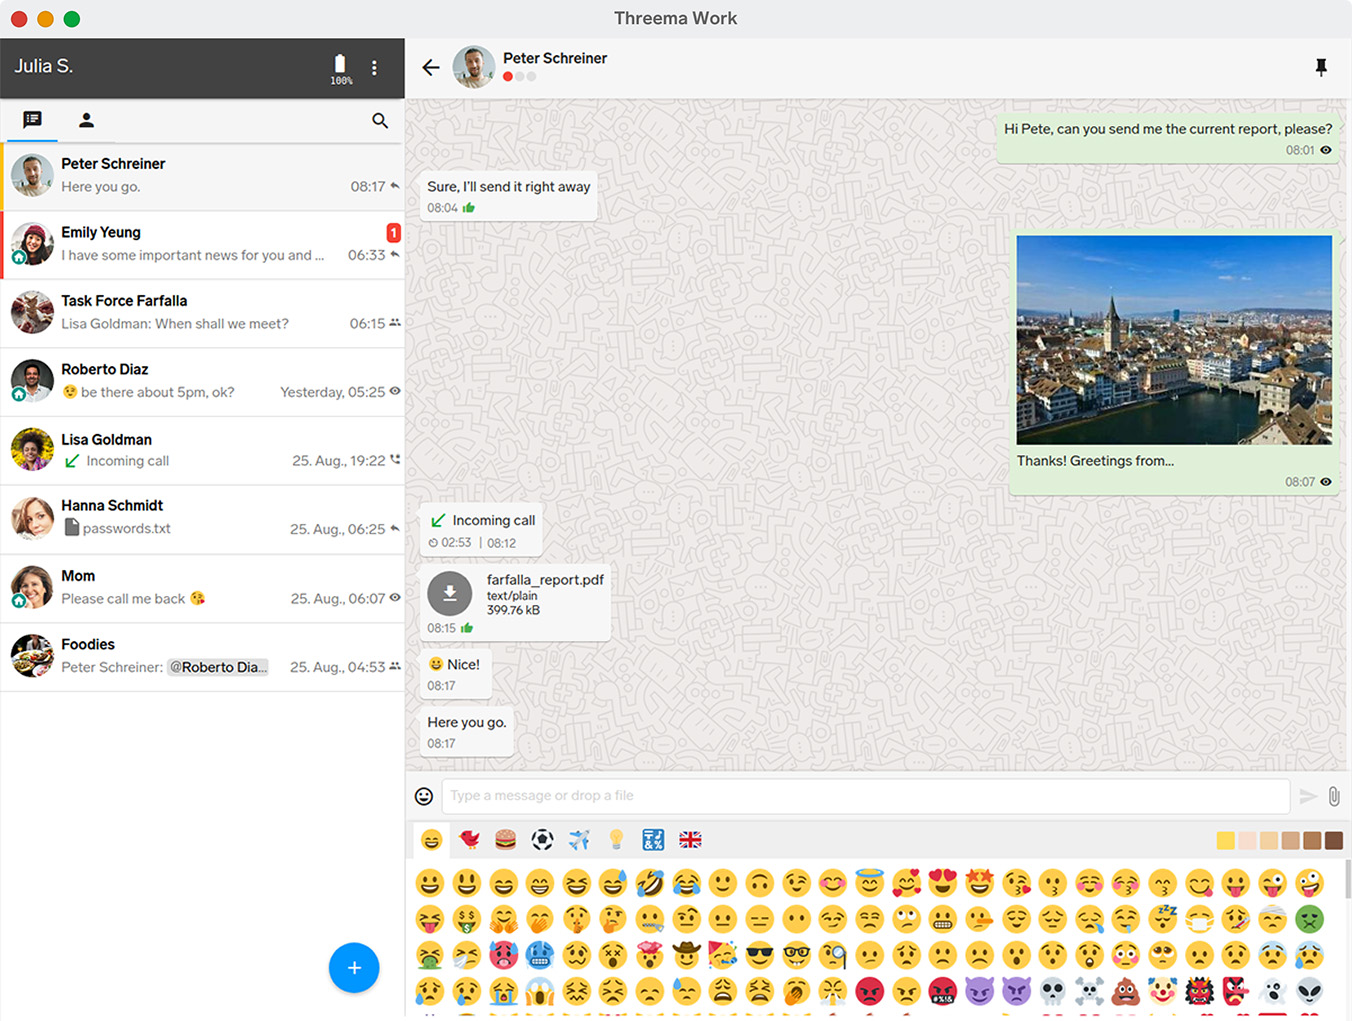 Vista general del chat en la aplicación de escritorio del business messenger Threema Work